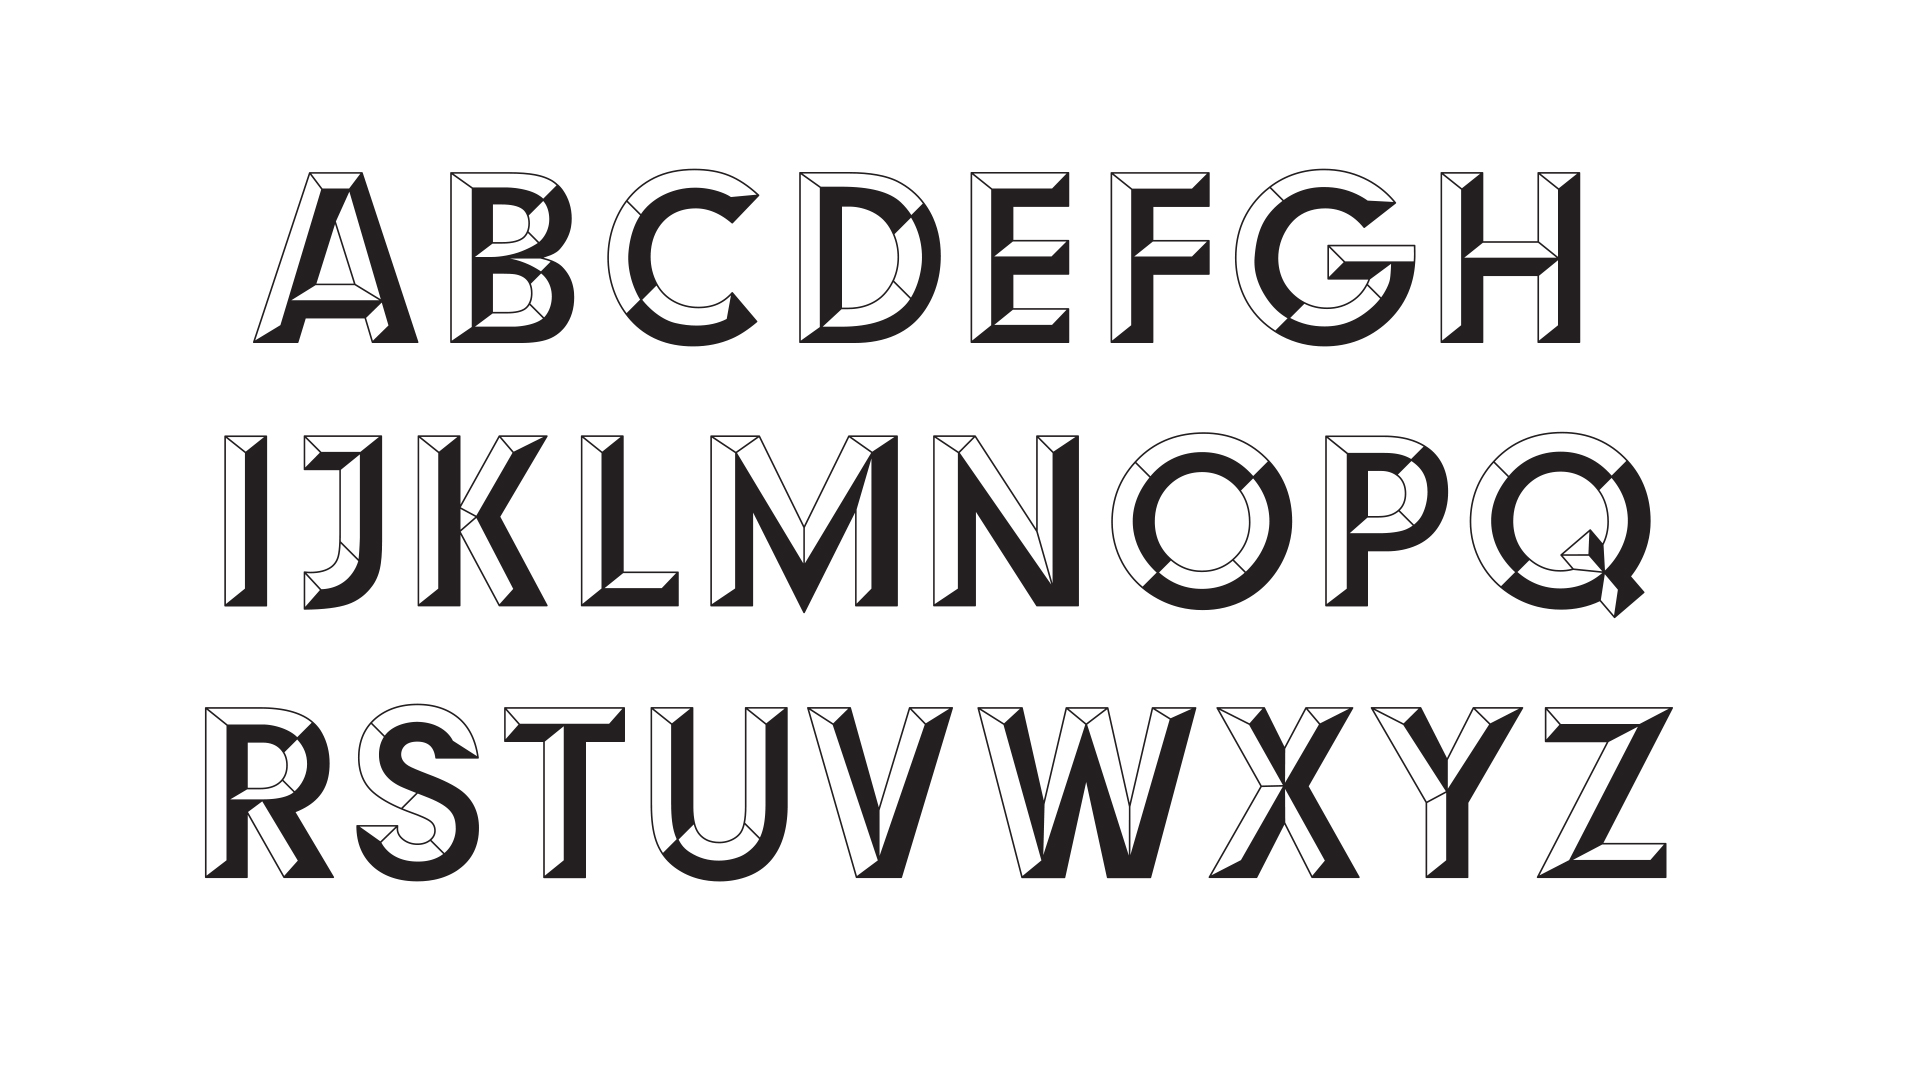 MarkArrowsmith-Indian-Typeface-Image-BW3